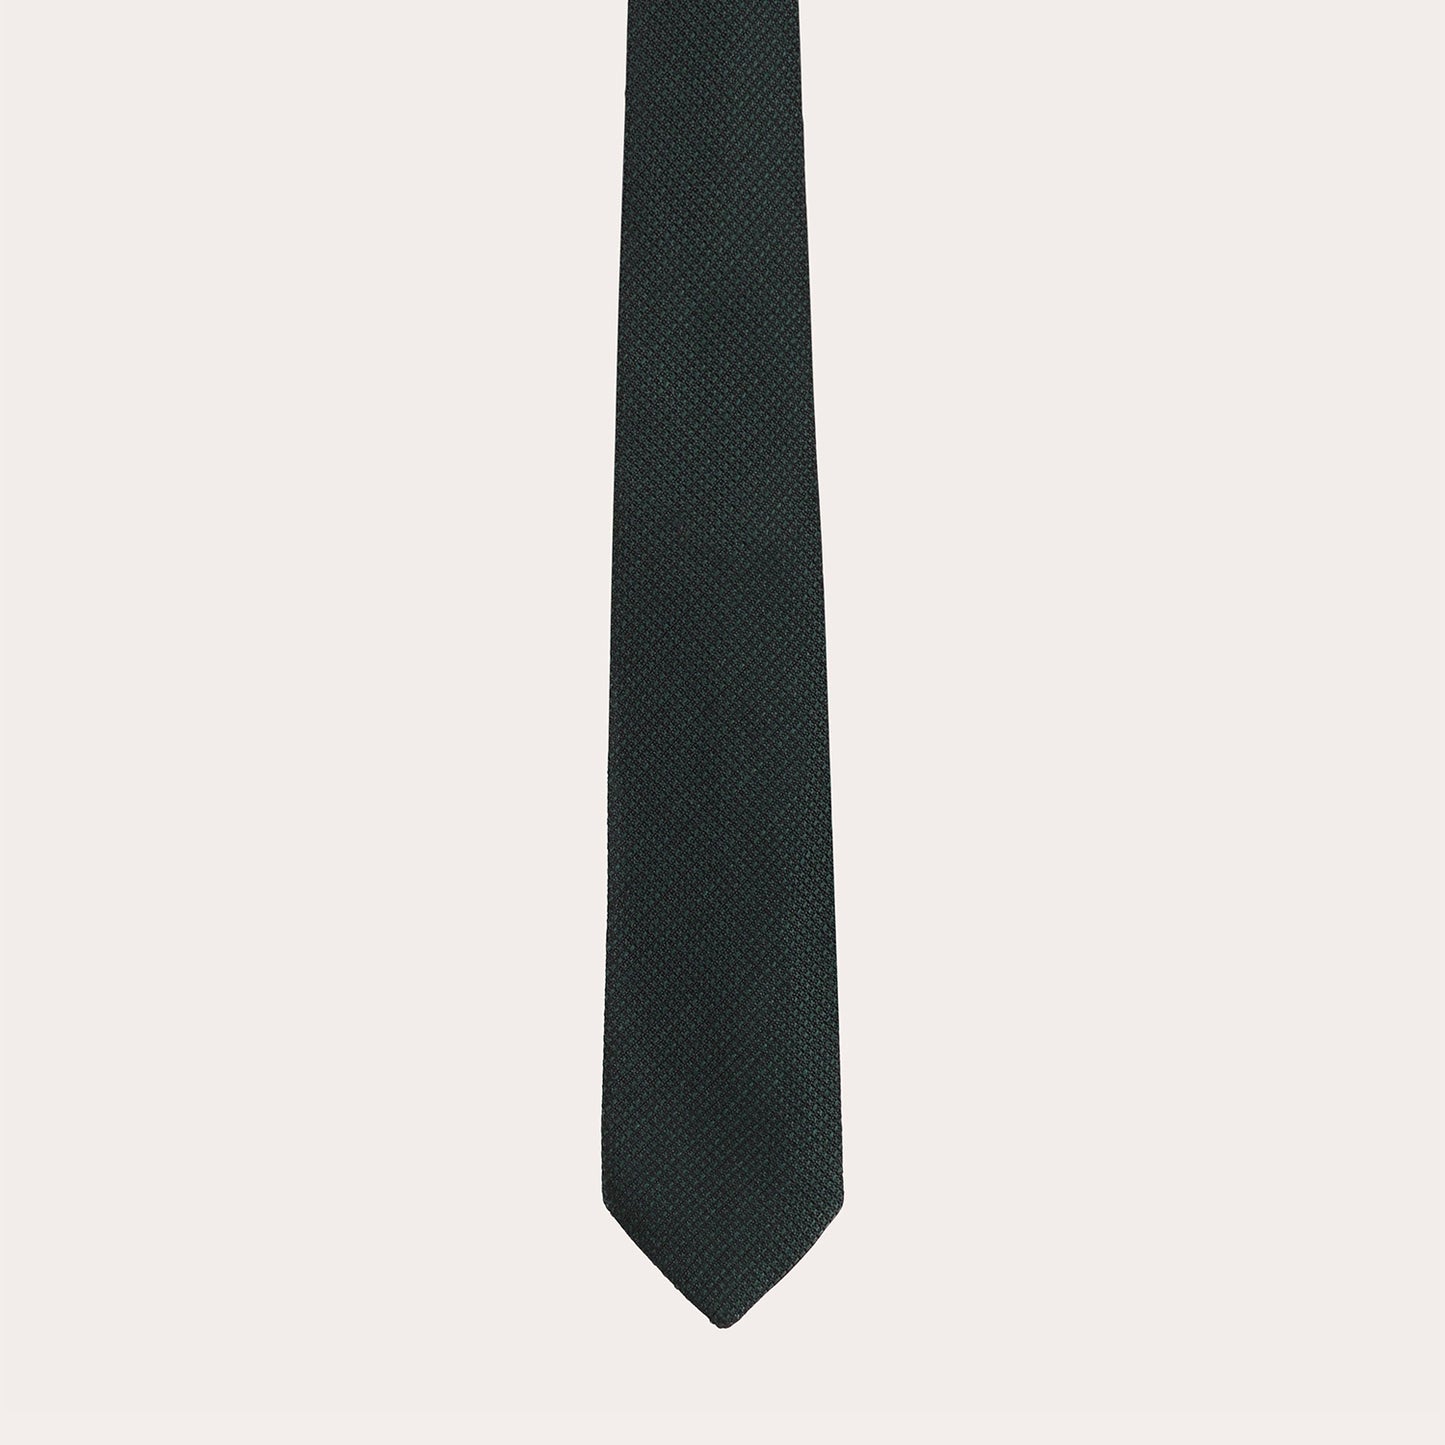 Cravate tissée verte